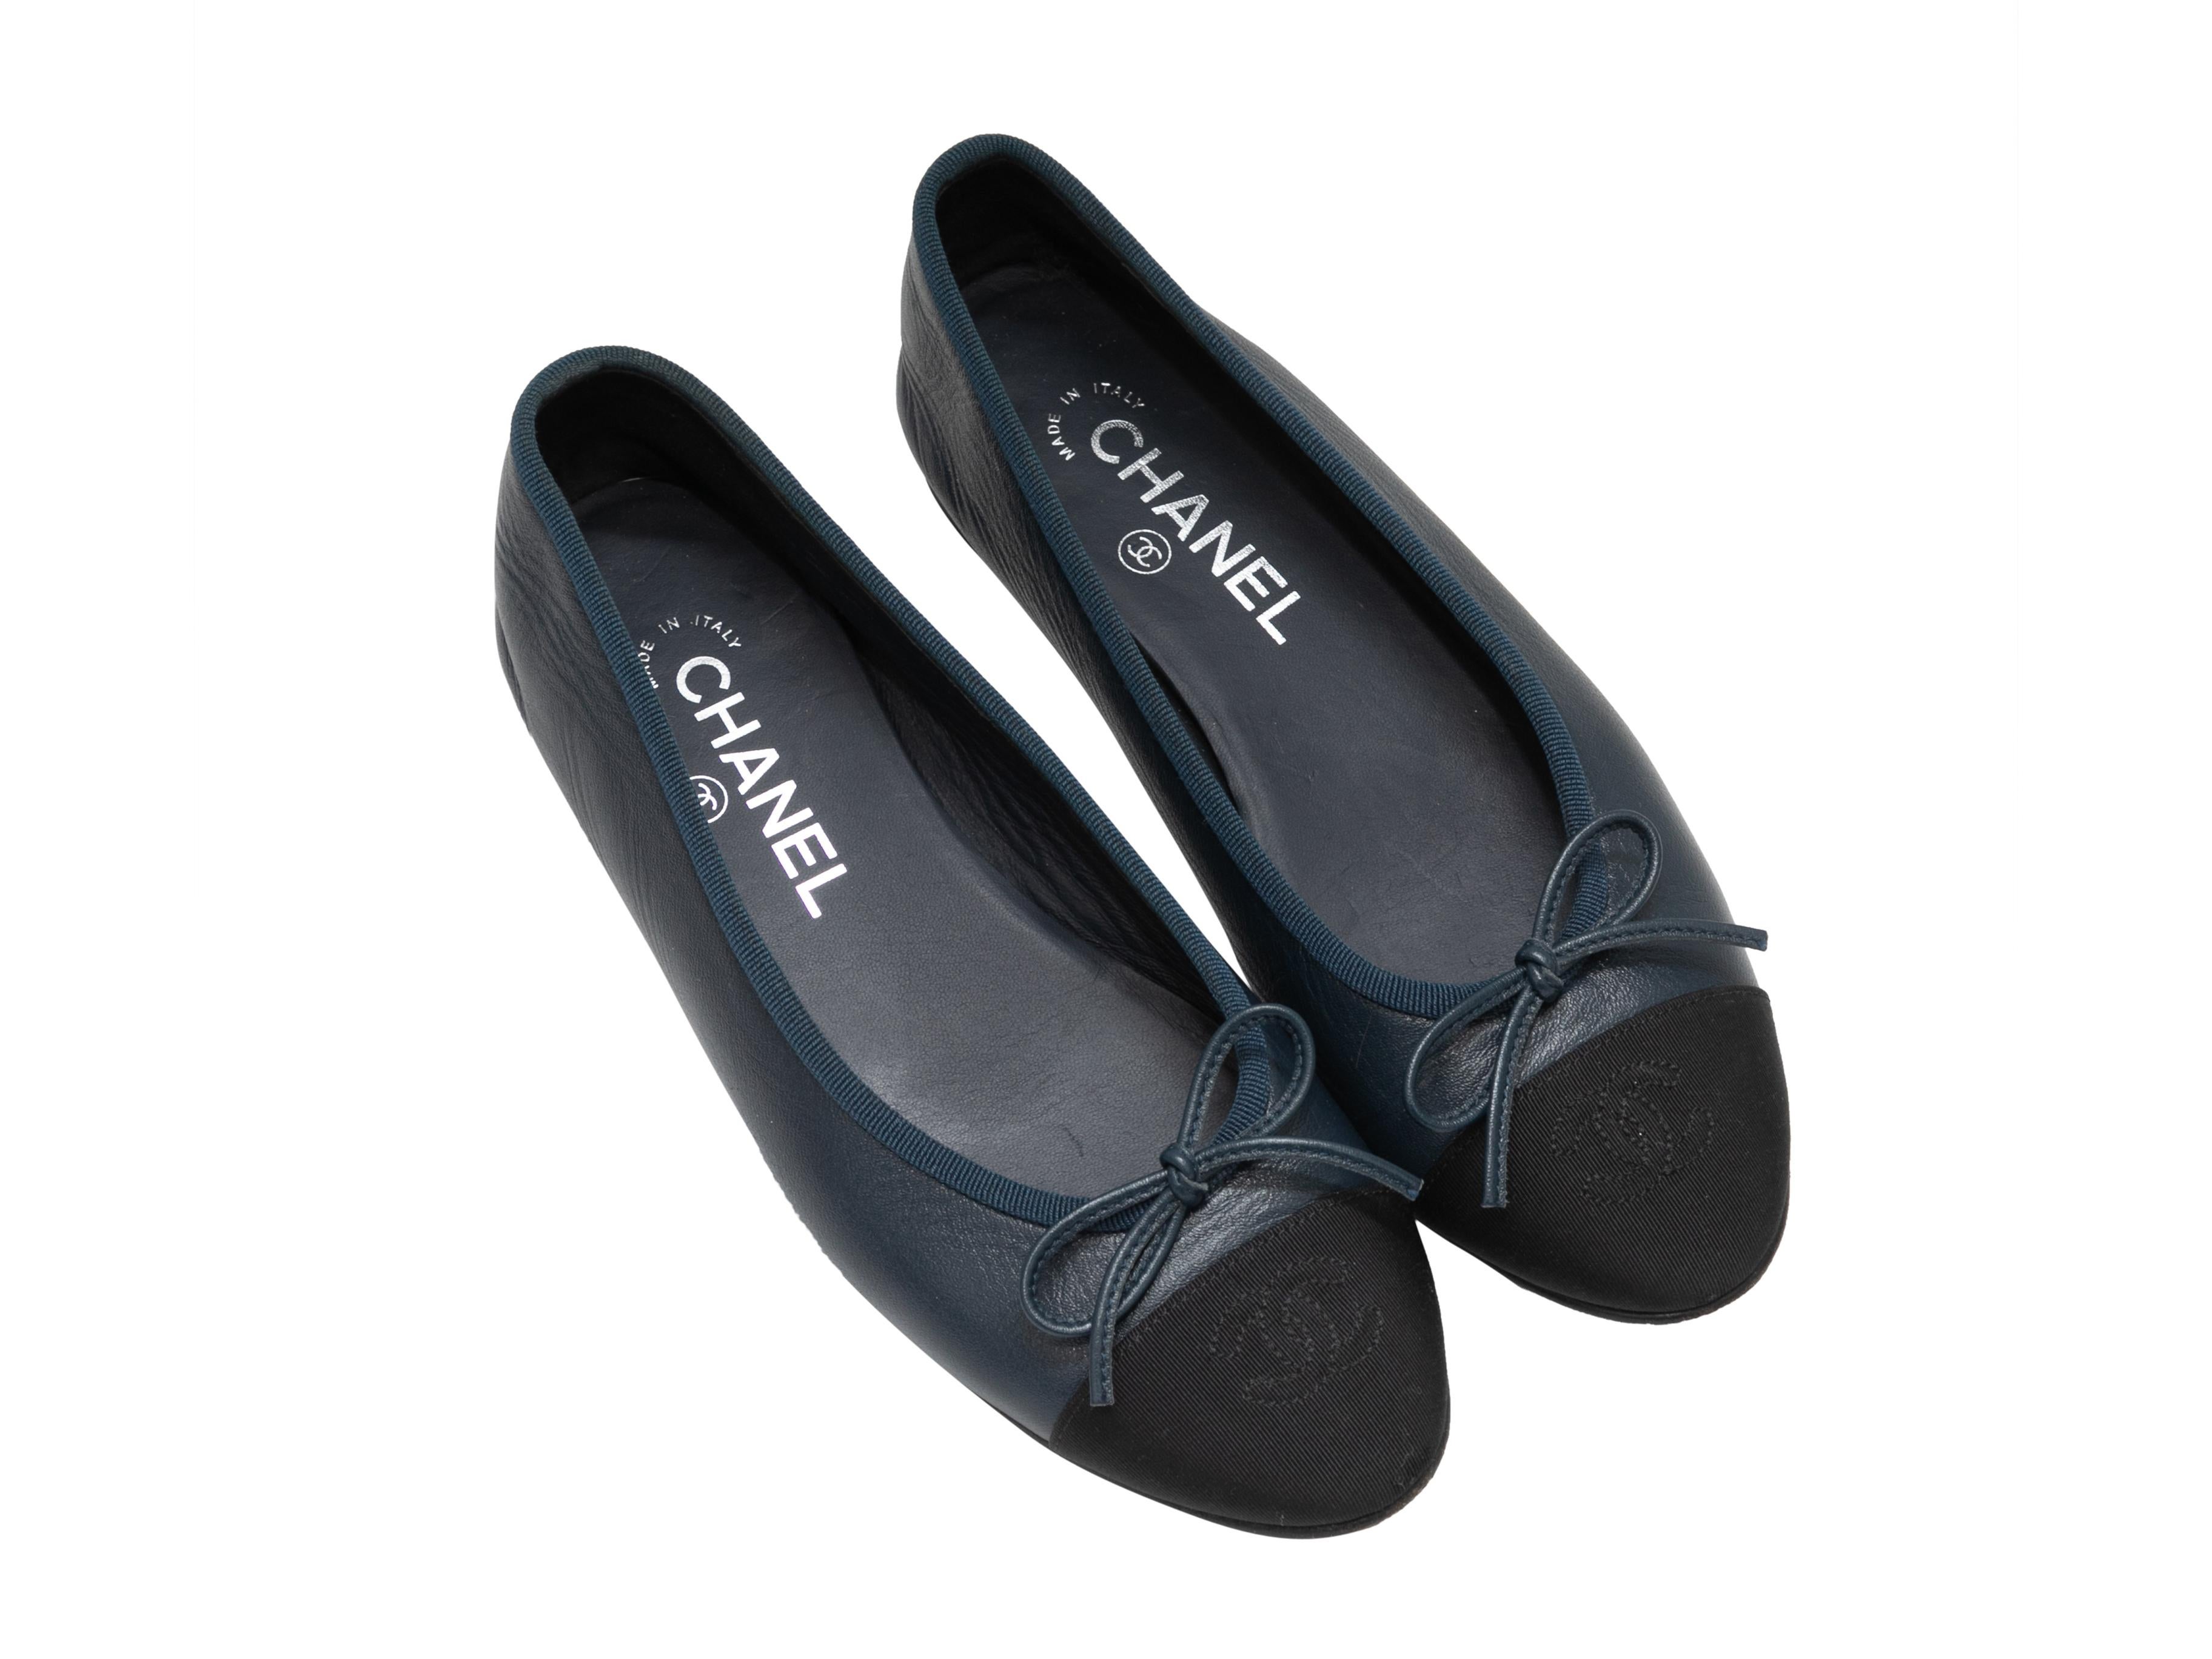 Marineblaue Ballettschuhe aus Leder und schwarzem Grosgrain von Chanel mit CAP-Zehe. CC-Logo-Stickerei und Schleifenakzente am Oberteil.

Designer Größe: 36.5
US Empfohlene Größe: 6.5